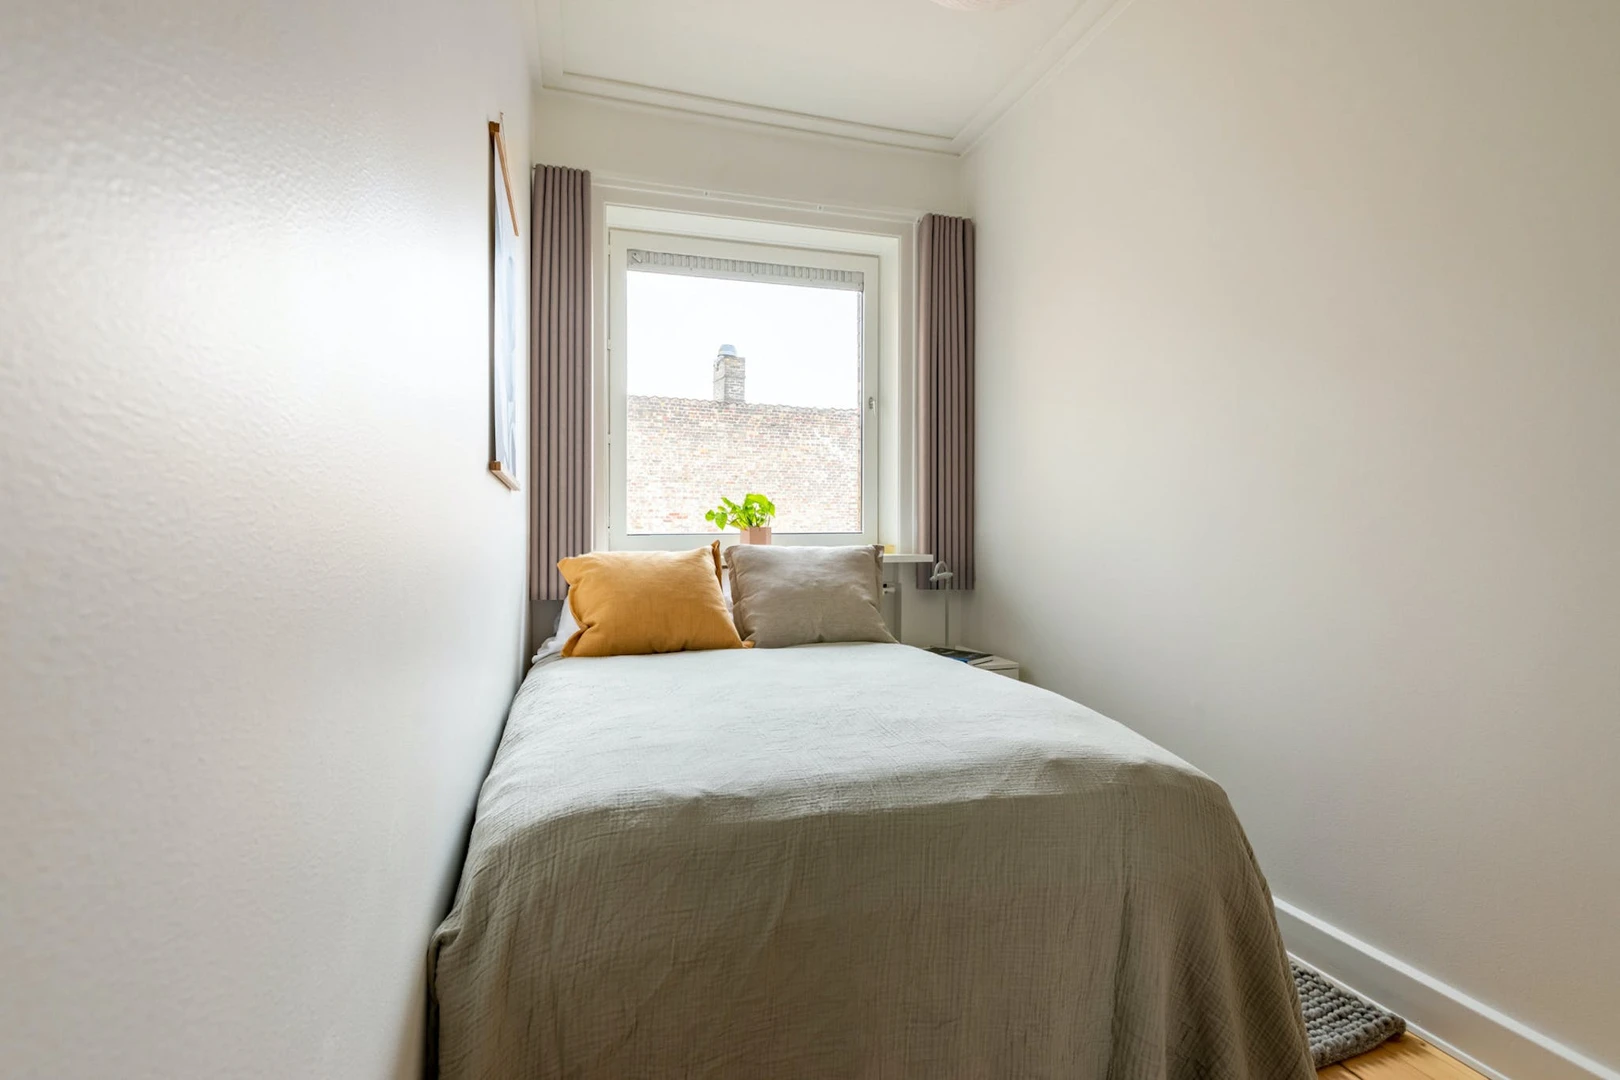 Pokój do wynajęcia z podwójnym łóżkiem w Kopenhaga